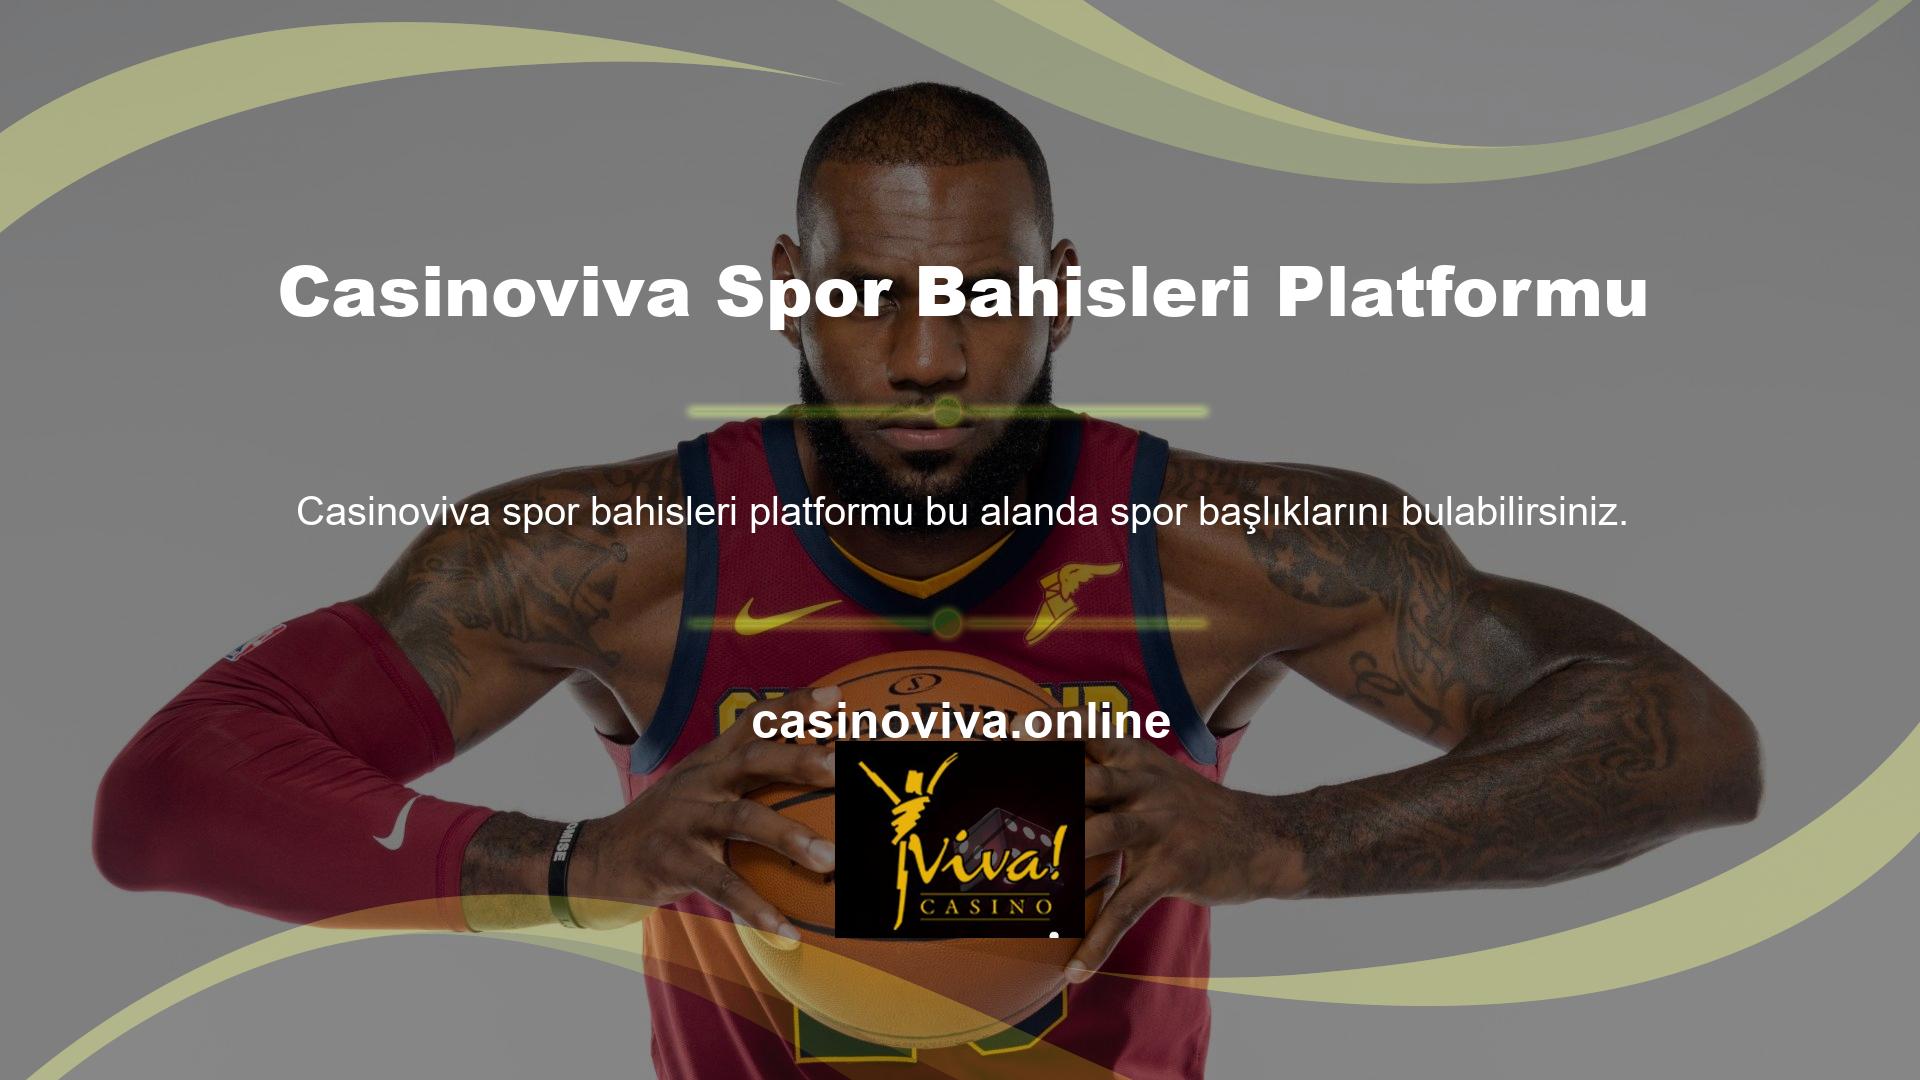 Casinoviva Spor Bahis Platformundan gelen bildirimler, teklifler ve fiyatlar kamuya açık ve günceldir